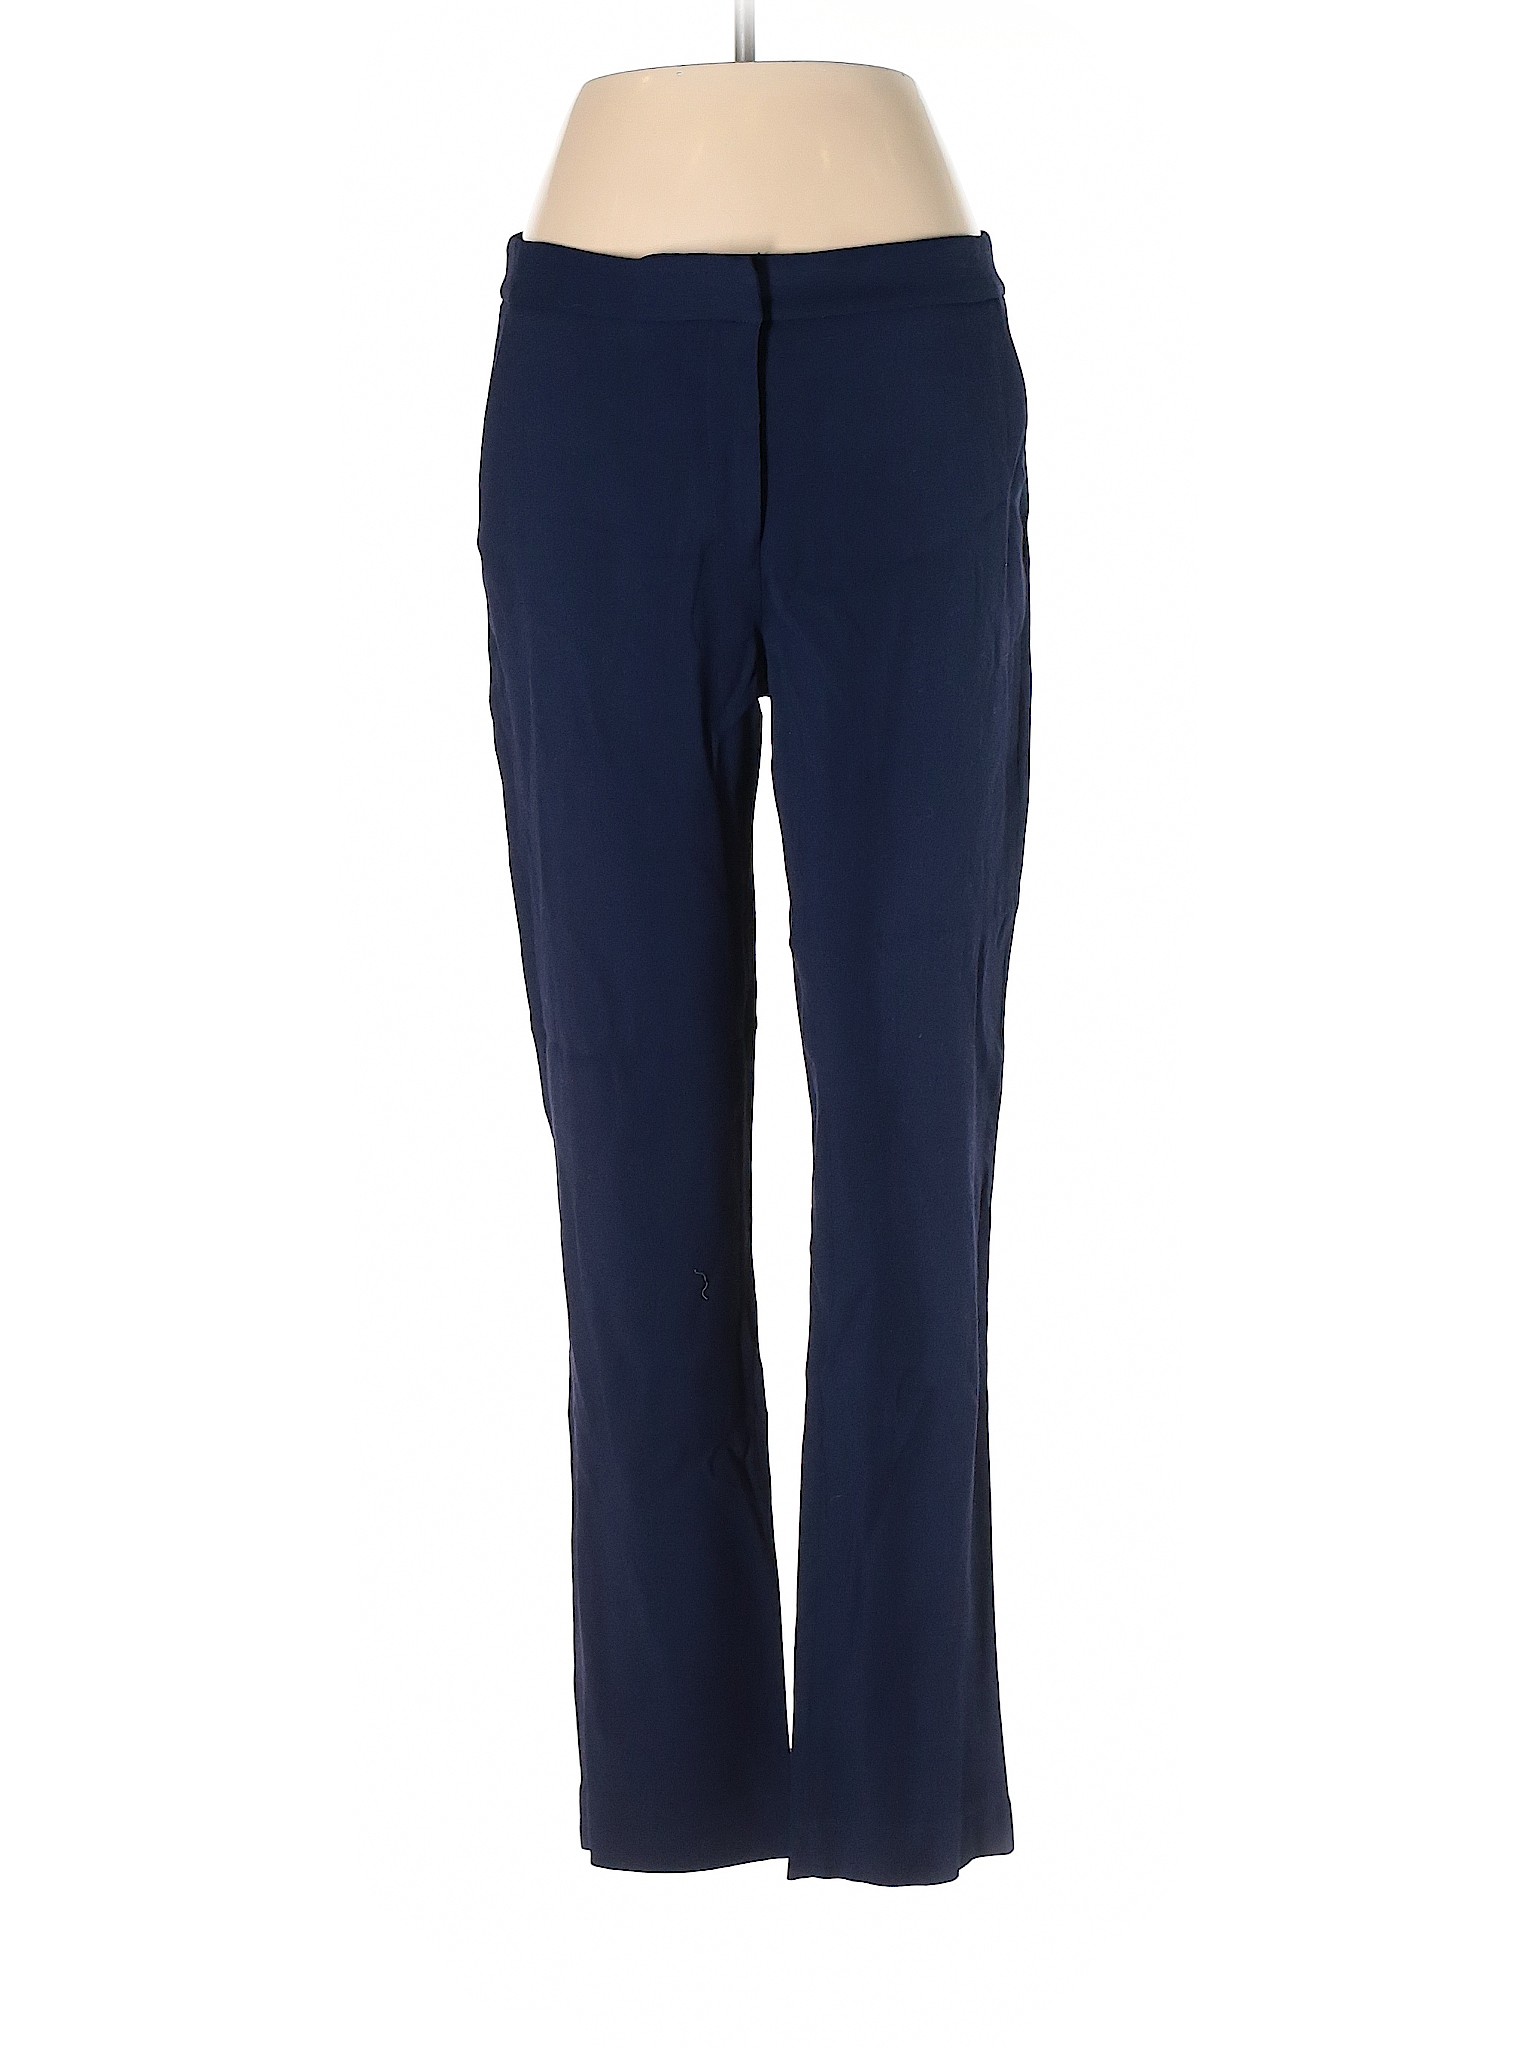 MM. LaFleur Women Blue Dress Pants 6 | eBay